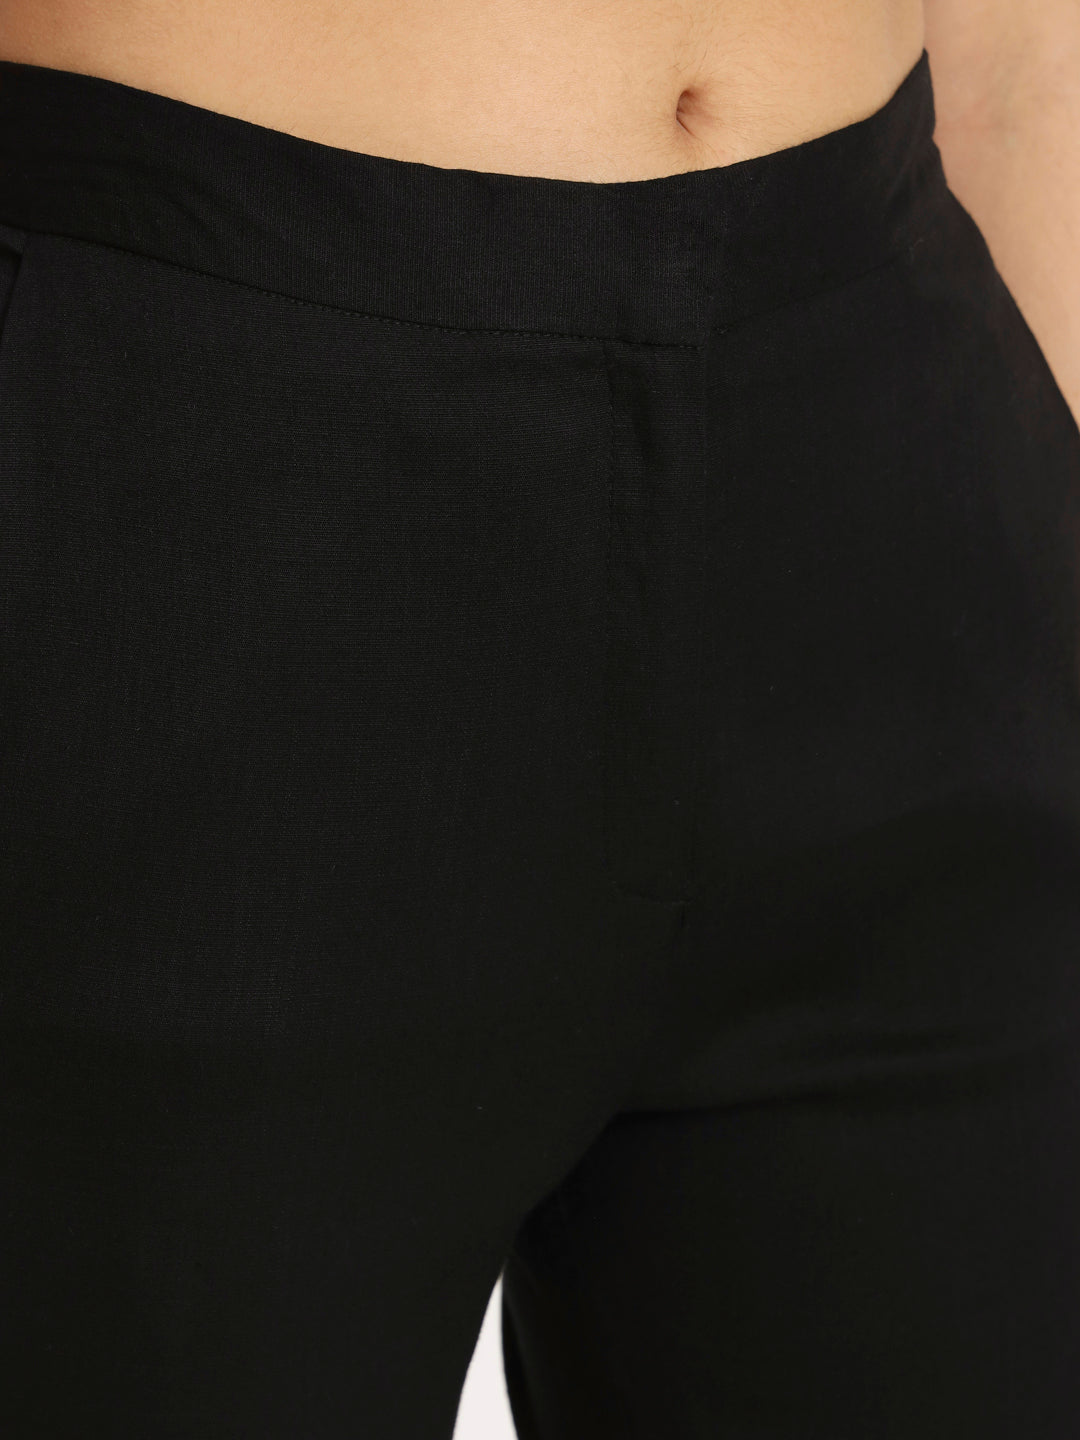 Black Colour Lycra Pants